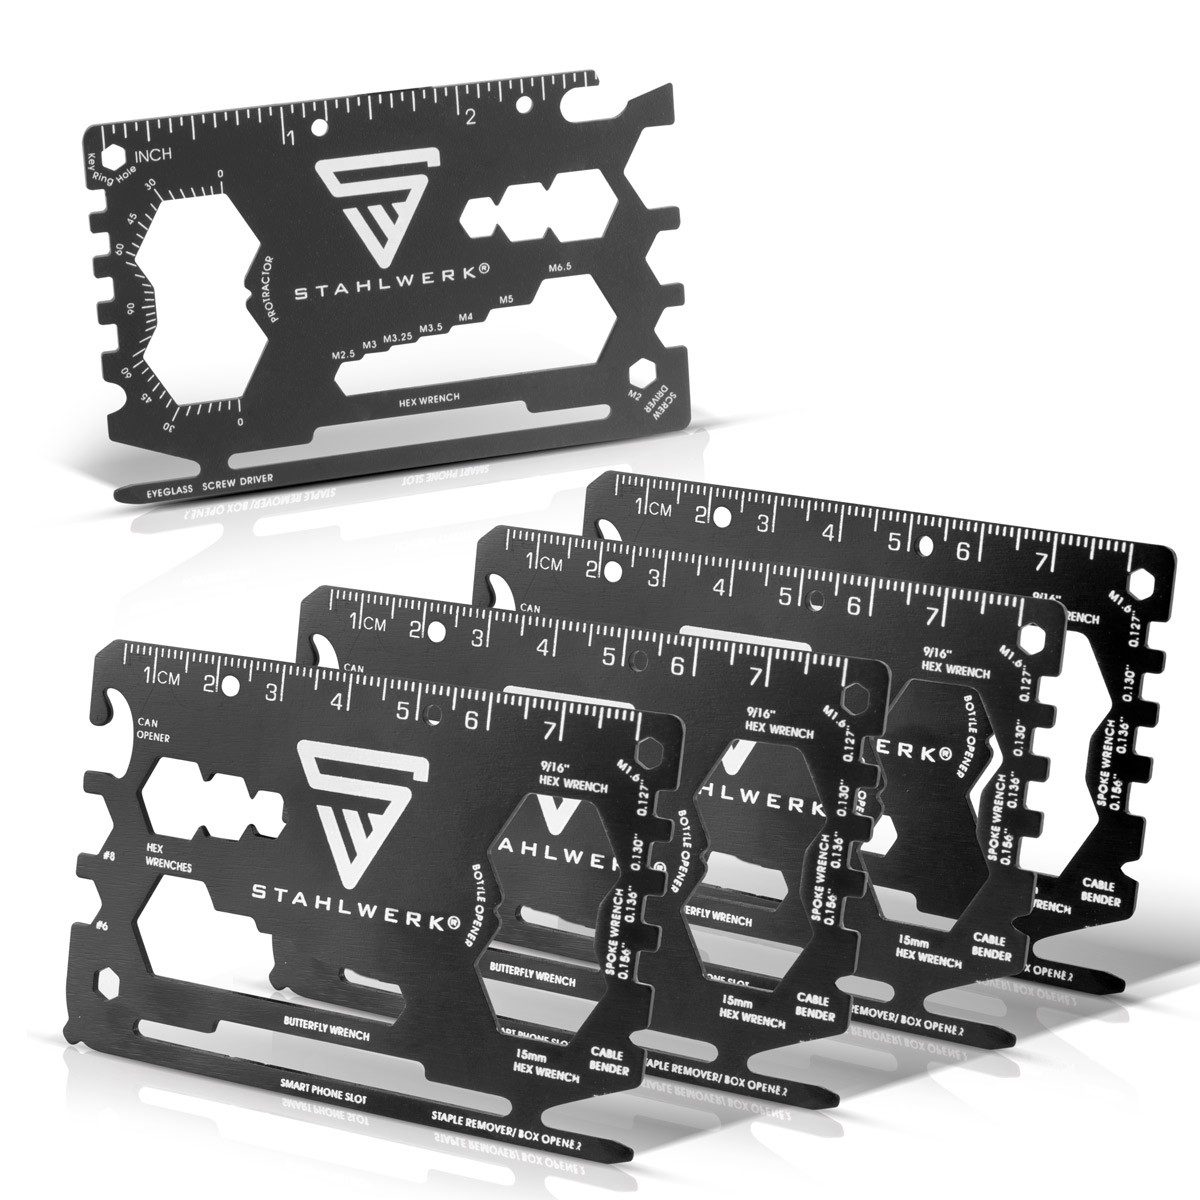 STAHLWERK Werkzeugset Toolcard Multitool 18 in 1 Multifunktionswerkzeug, (Packung), aus hochwertigem Stahl in Kartengröße 3er Set Schraubenzieher